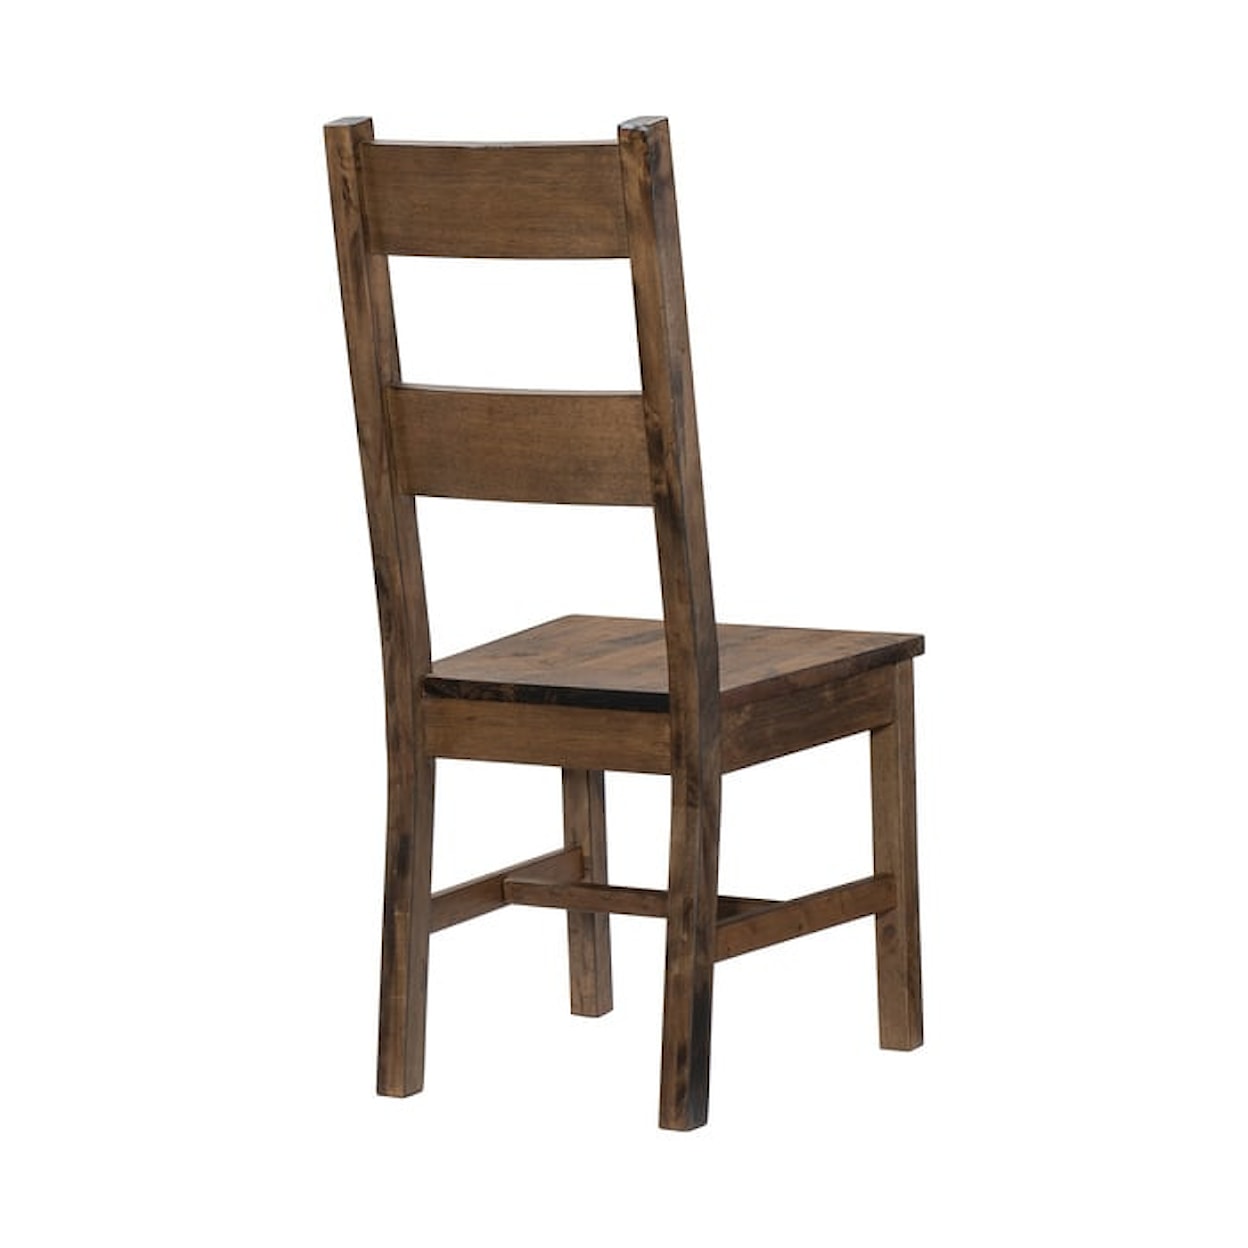 Homelegance Jerrick Side Chair